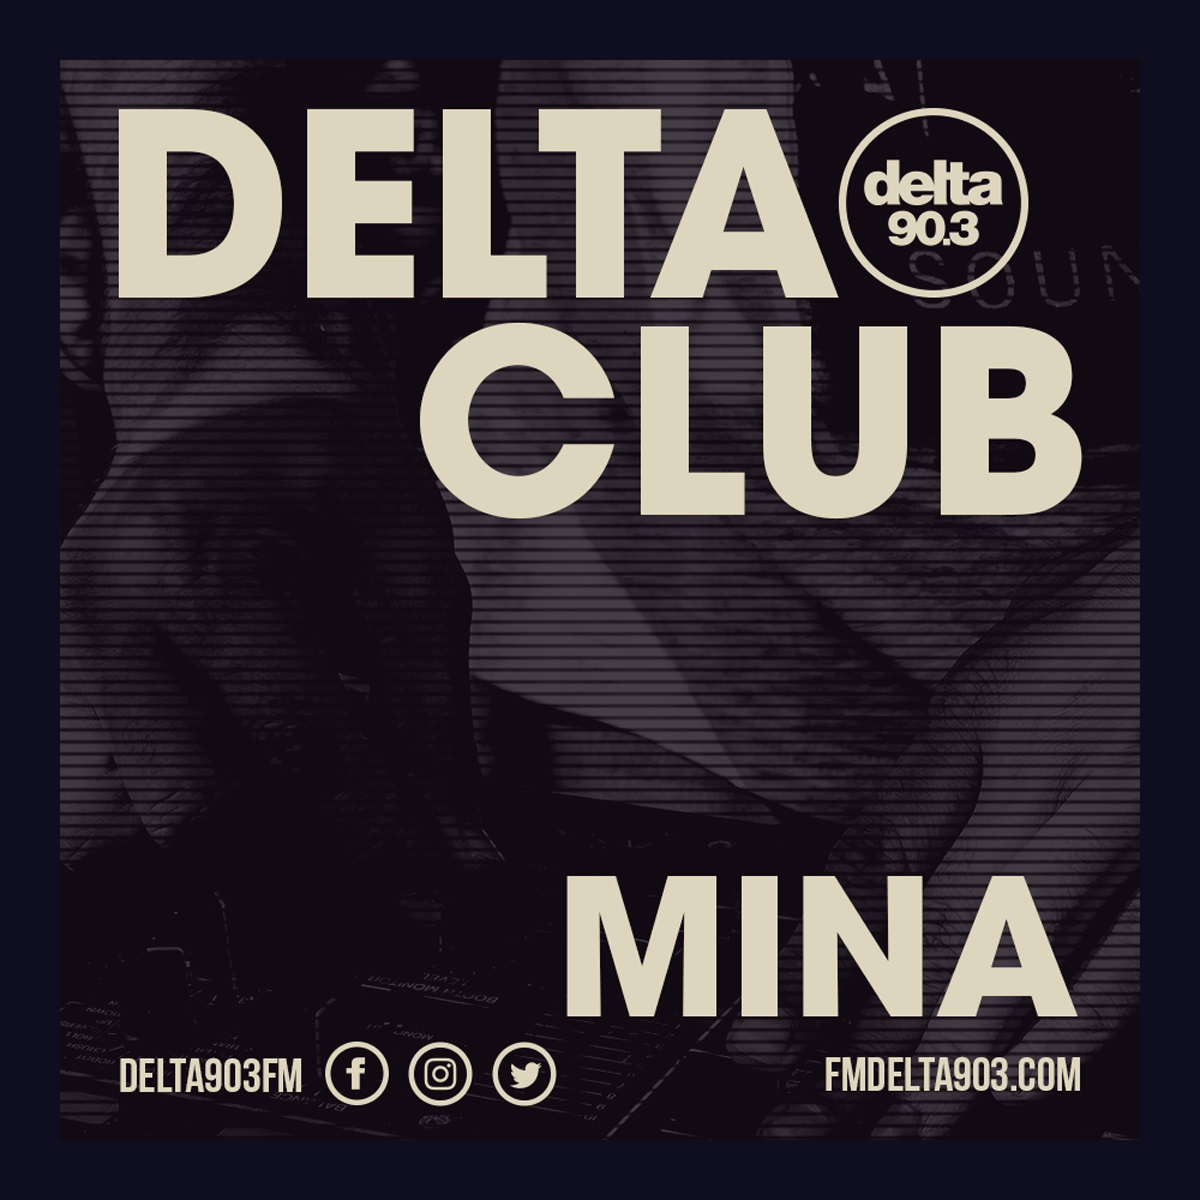 Delta Podcasts - Delta Club presents MINA (10.04.2018)